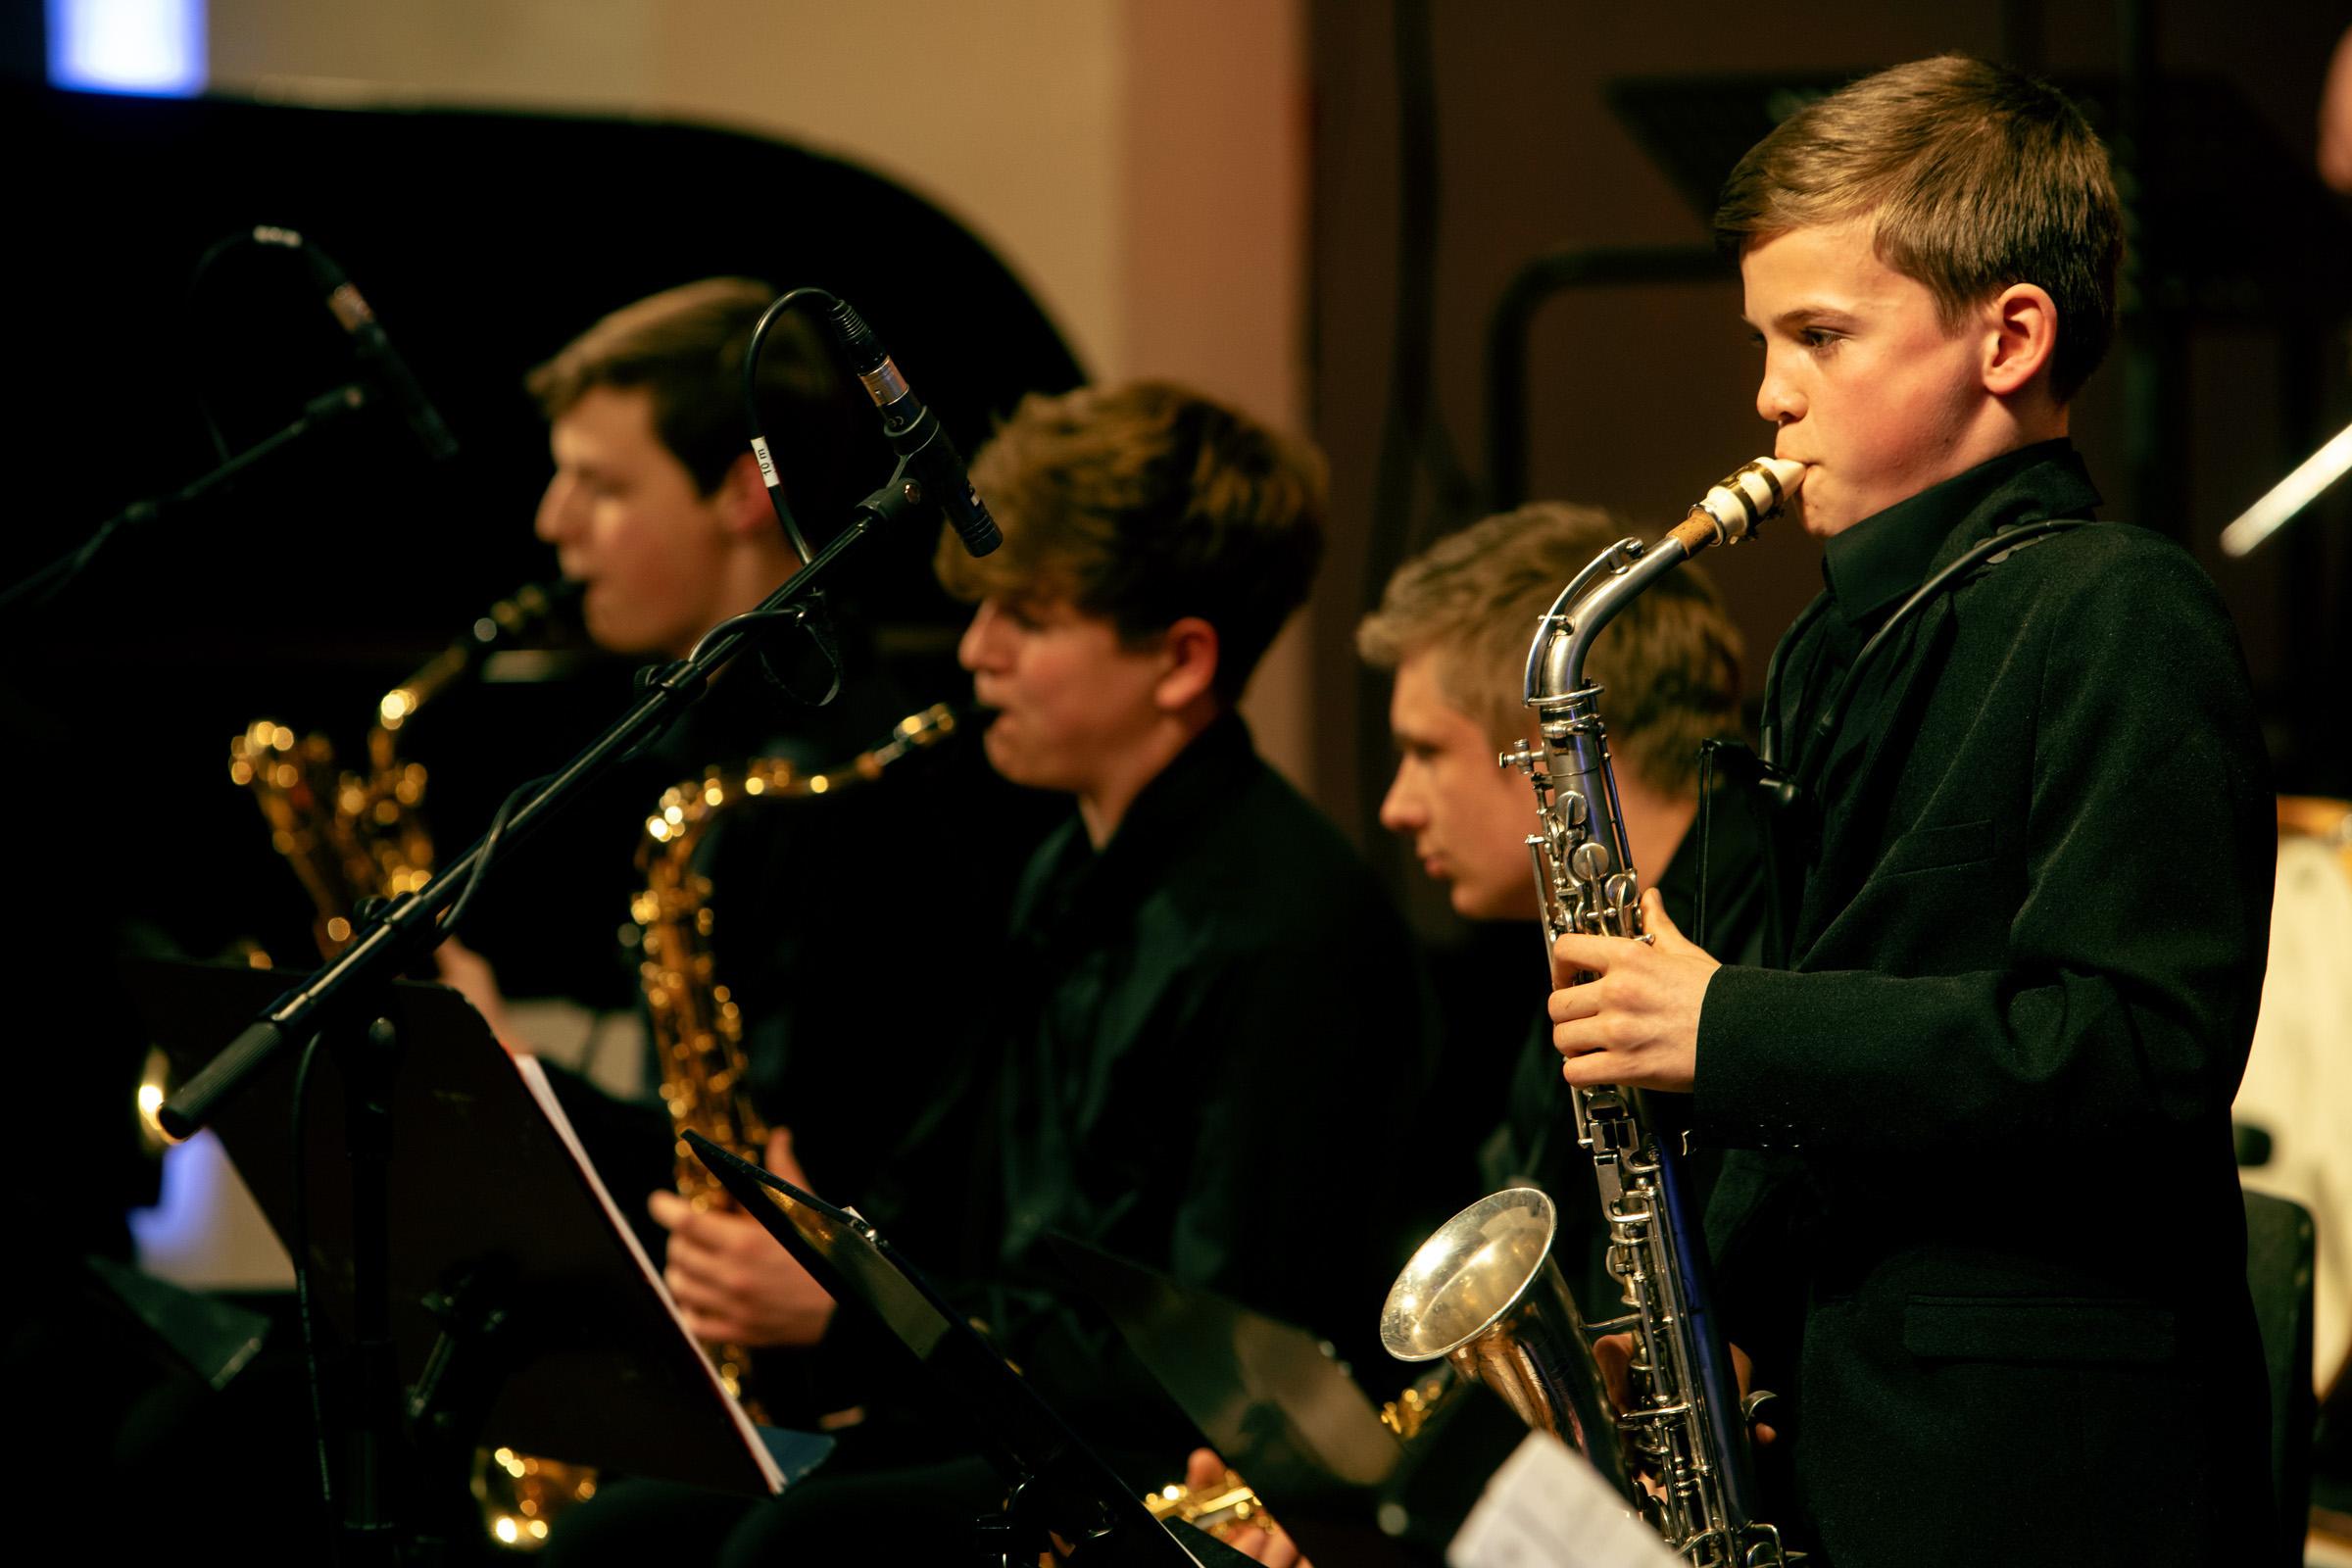 Vier Saxofonisten, von denen einer ein Solo spielt, während des LaJJazzO Junior Konzerts in Frankfurt (Oder)